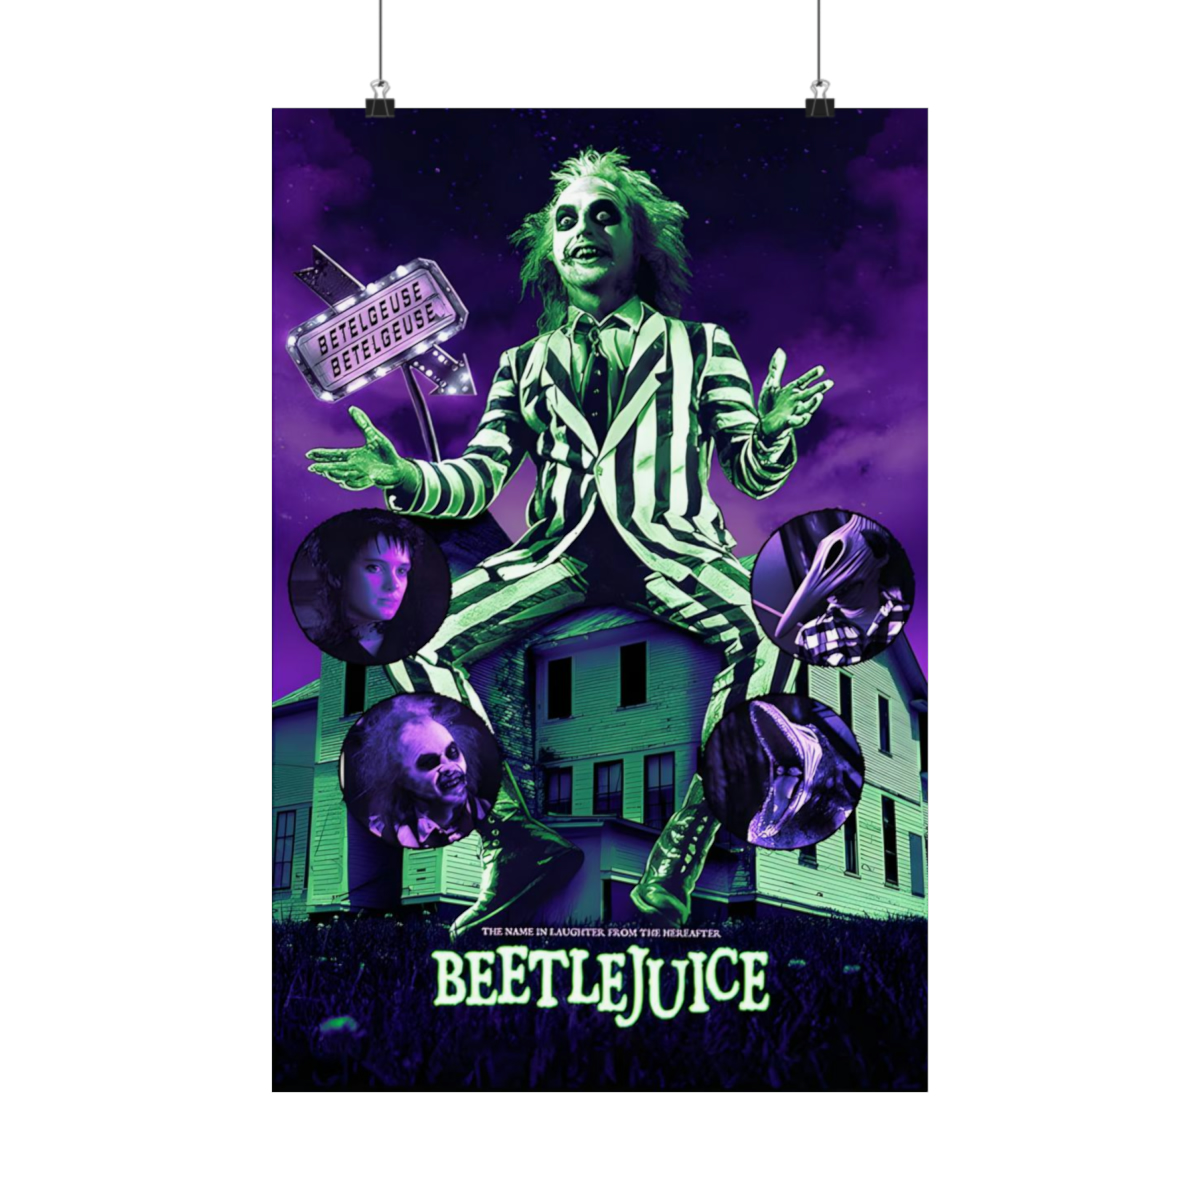 Beetlejuice Inspired Movie Poster